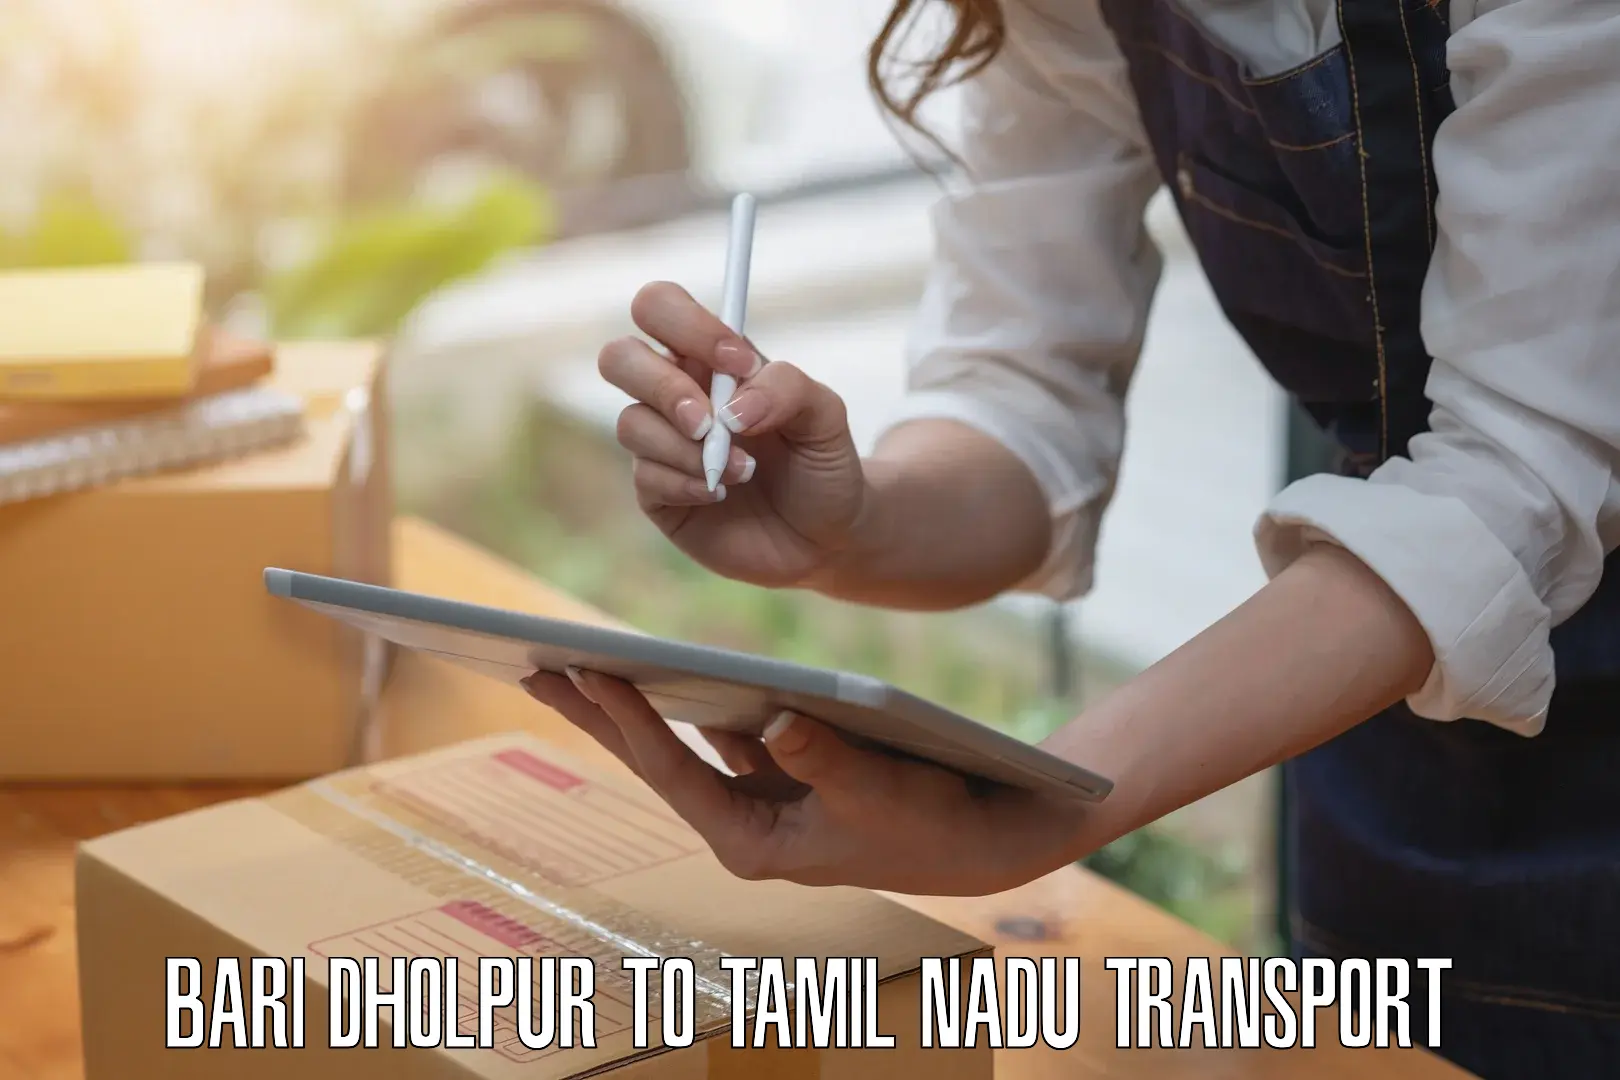 Pick up transport service Bari Dholpur to Tamil Nadu